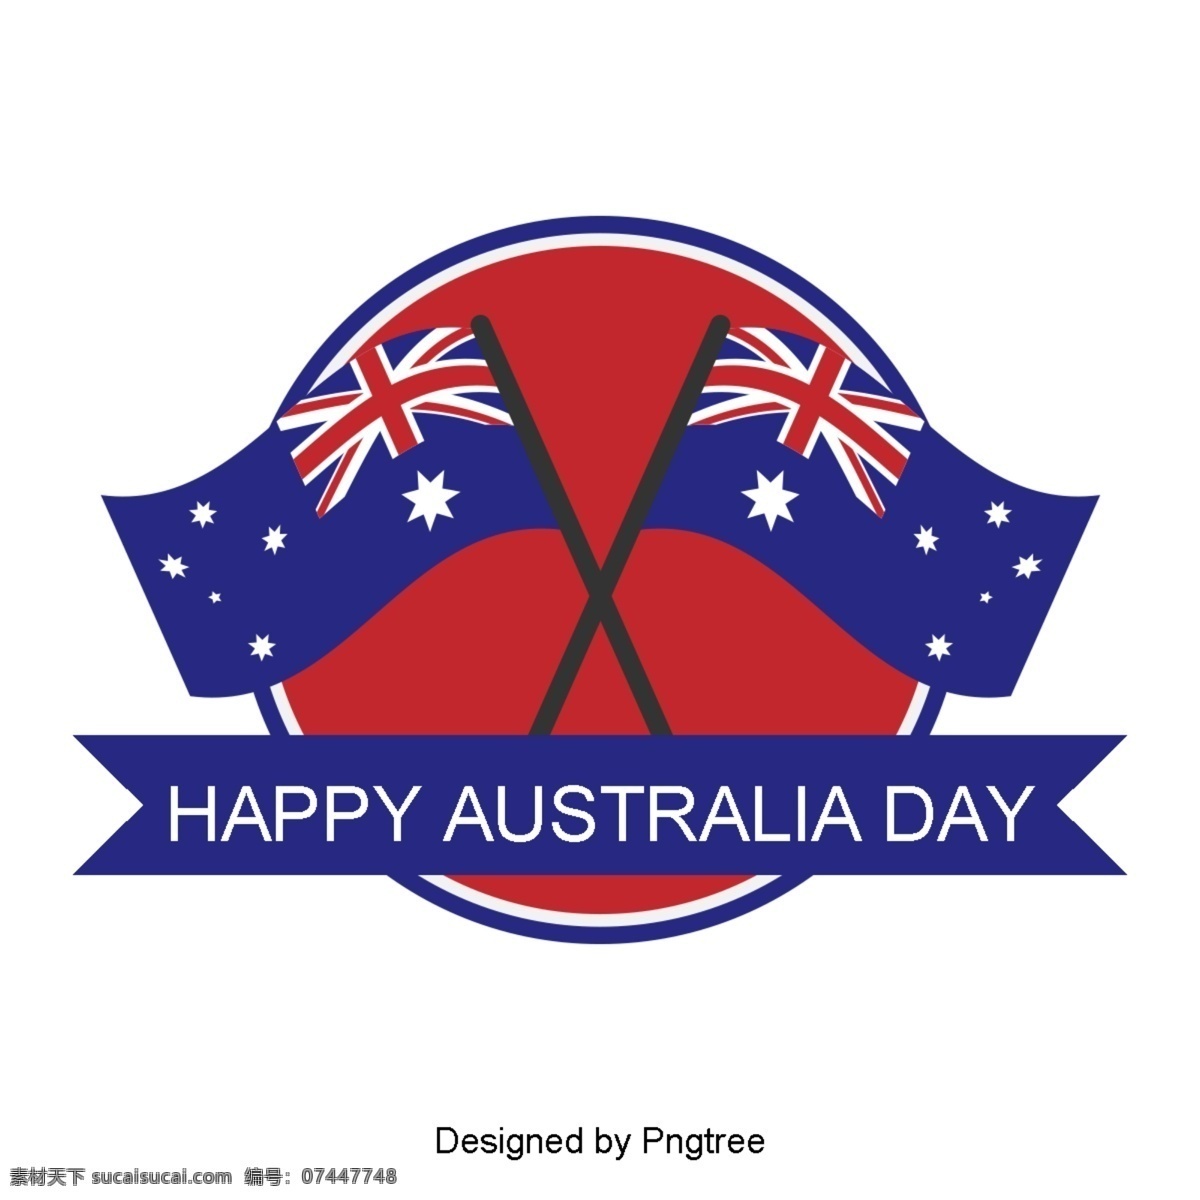 澳大利亚 国旗 旗帜 地图 蓝色 红色 星星 字体 澳大利亚日